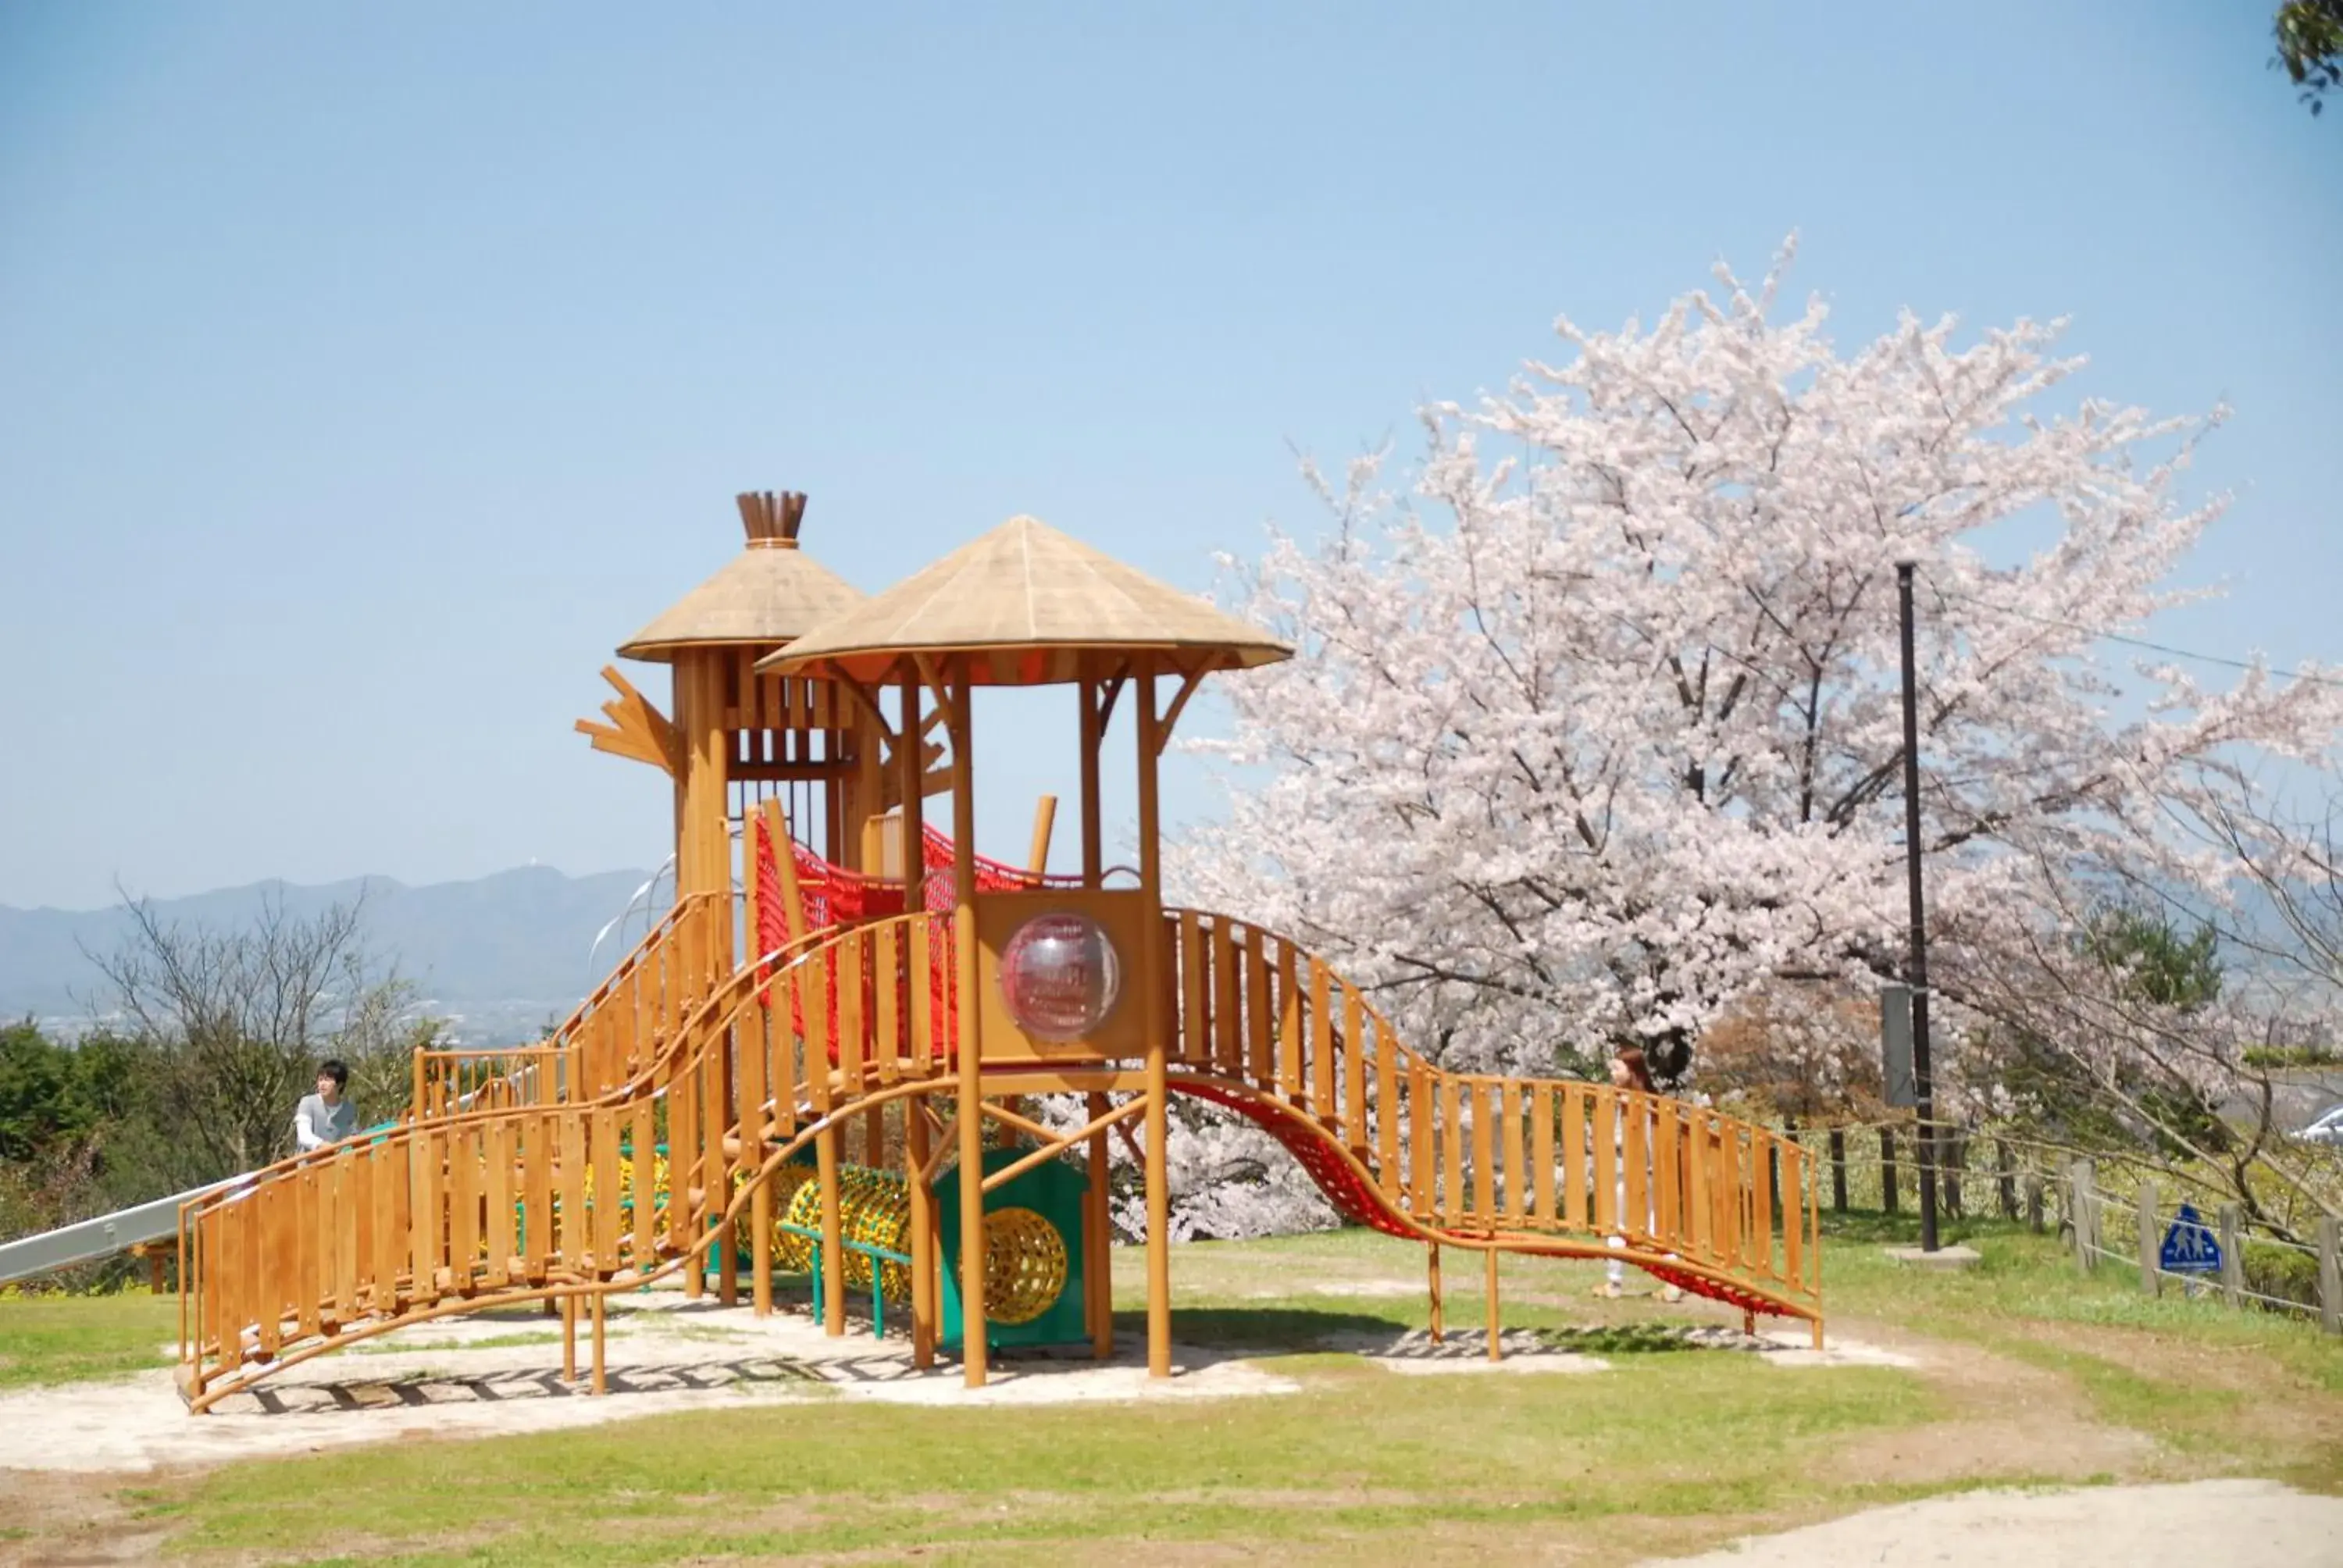 Children play ground, Children's Play Area in Matsue Forest Park